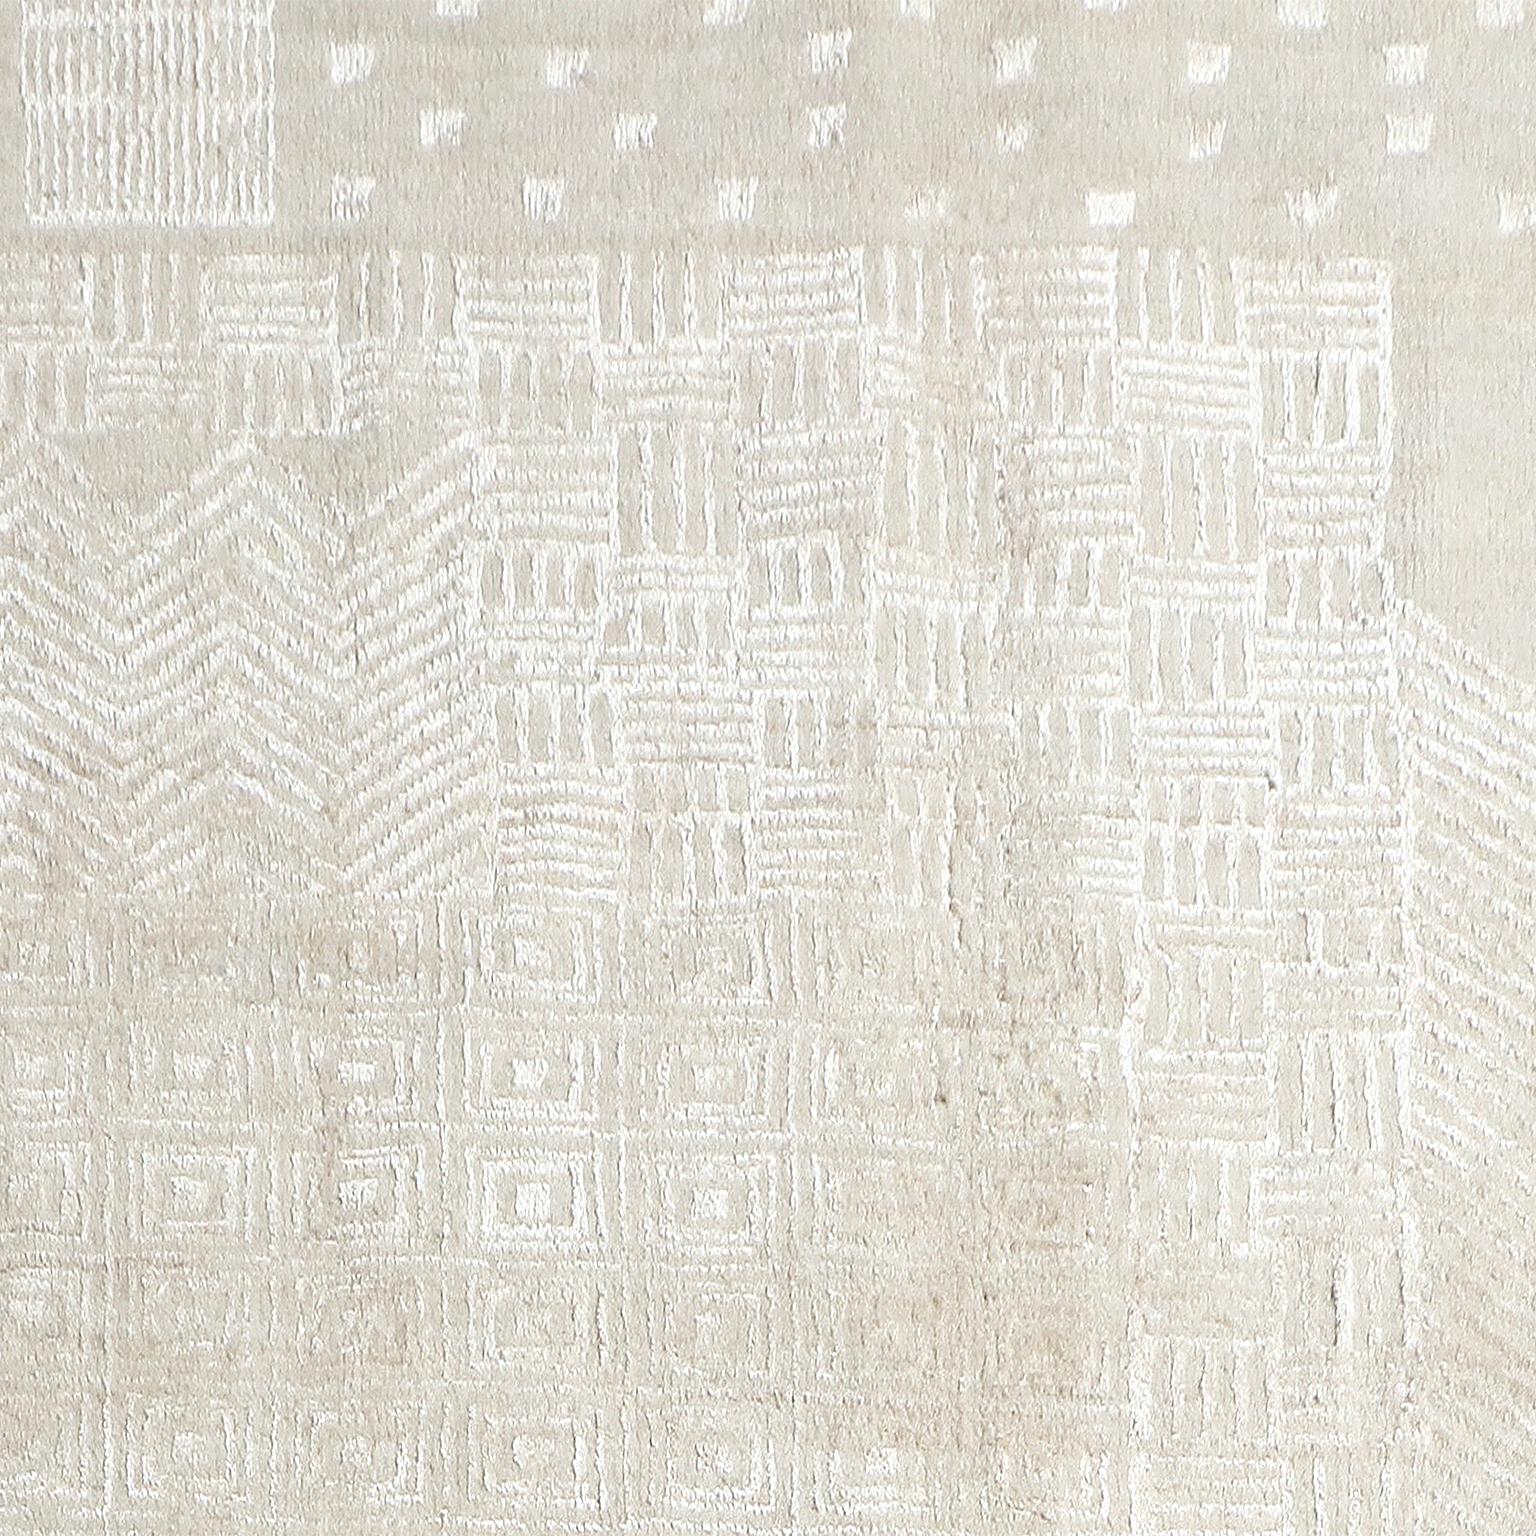 Dieser weiß auf weiß gehaltene Teppich im Format 5' x 7' verwendet Wolle im Hintergrund und echte Seide von Seidenraupen im Design. Das Ton-in-Ton-Design, inspiriert von den Traditionen des Art Déco, sorgt für eine subtile Gesamtwirkung und glänzt